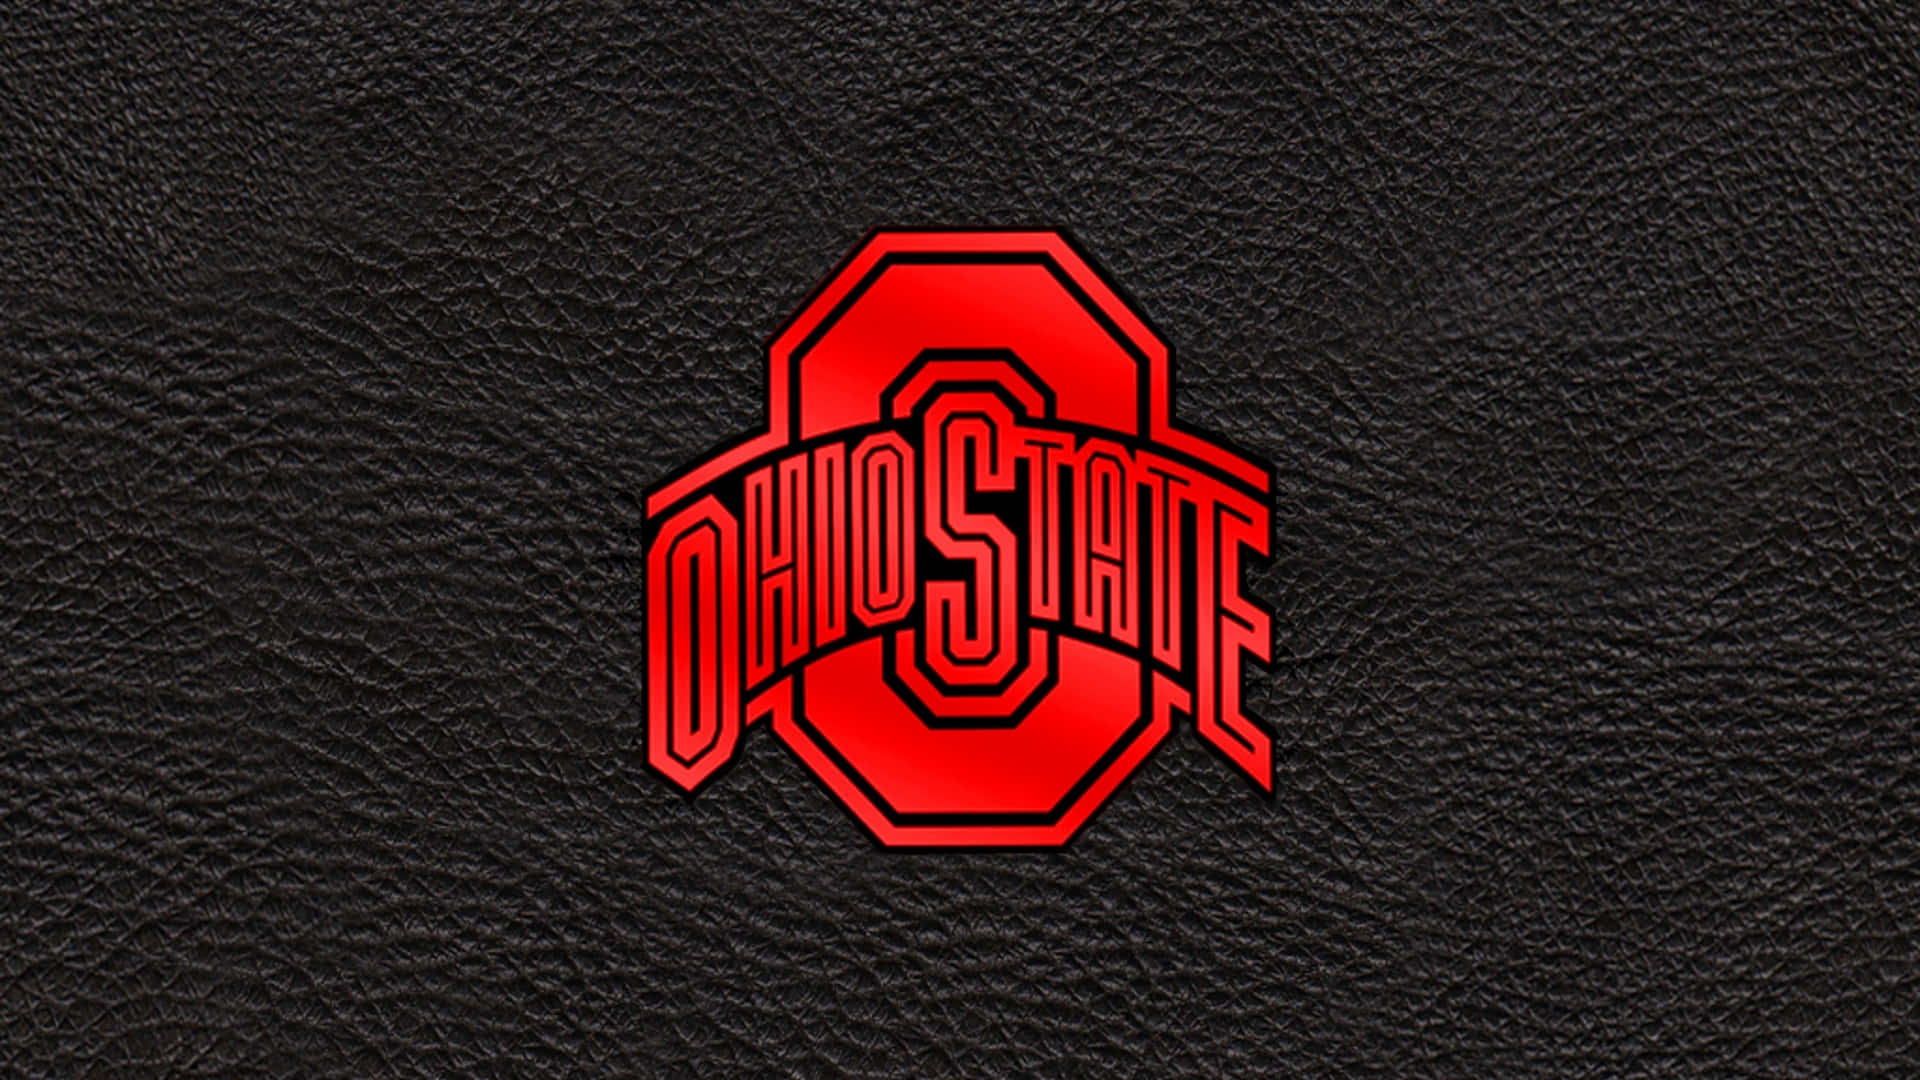 Schwarzesästhetisches Ohio State Football Team Logo Design Wallpaper